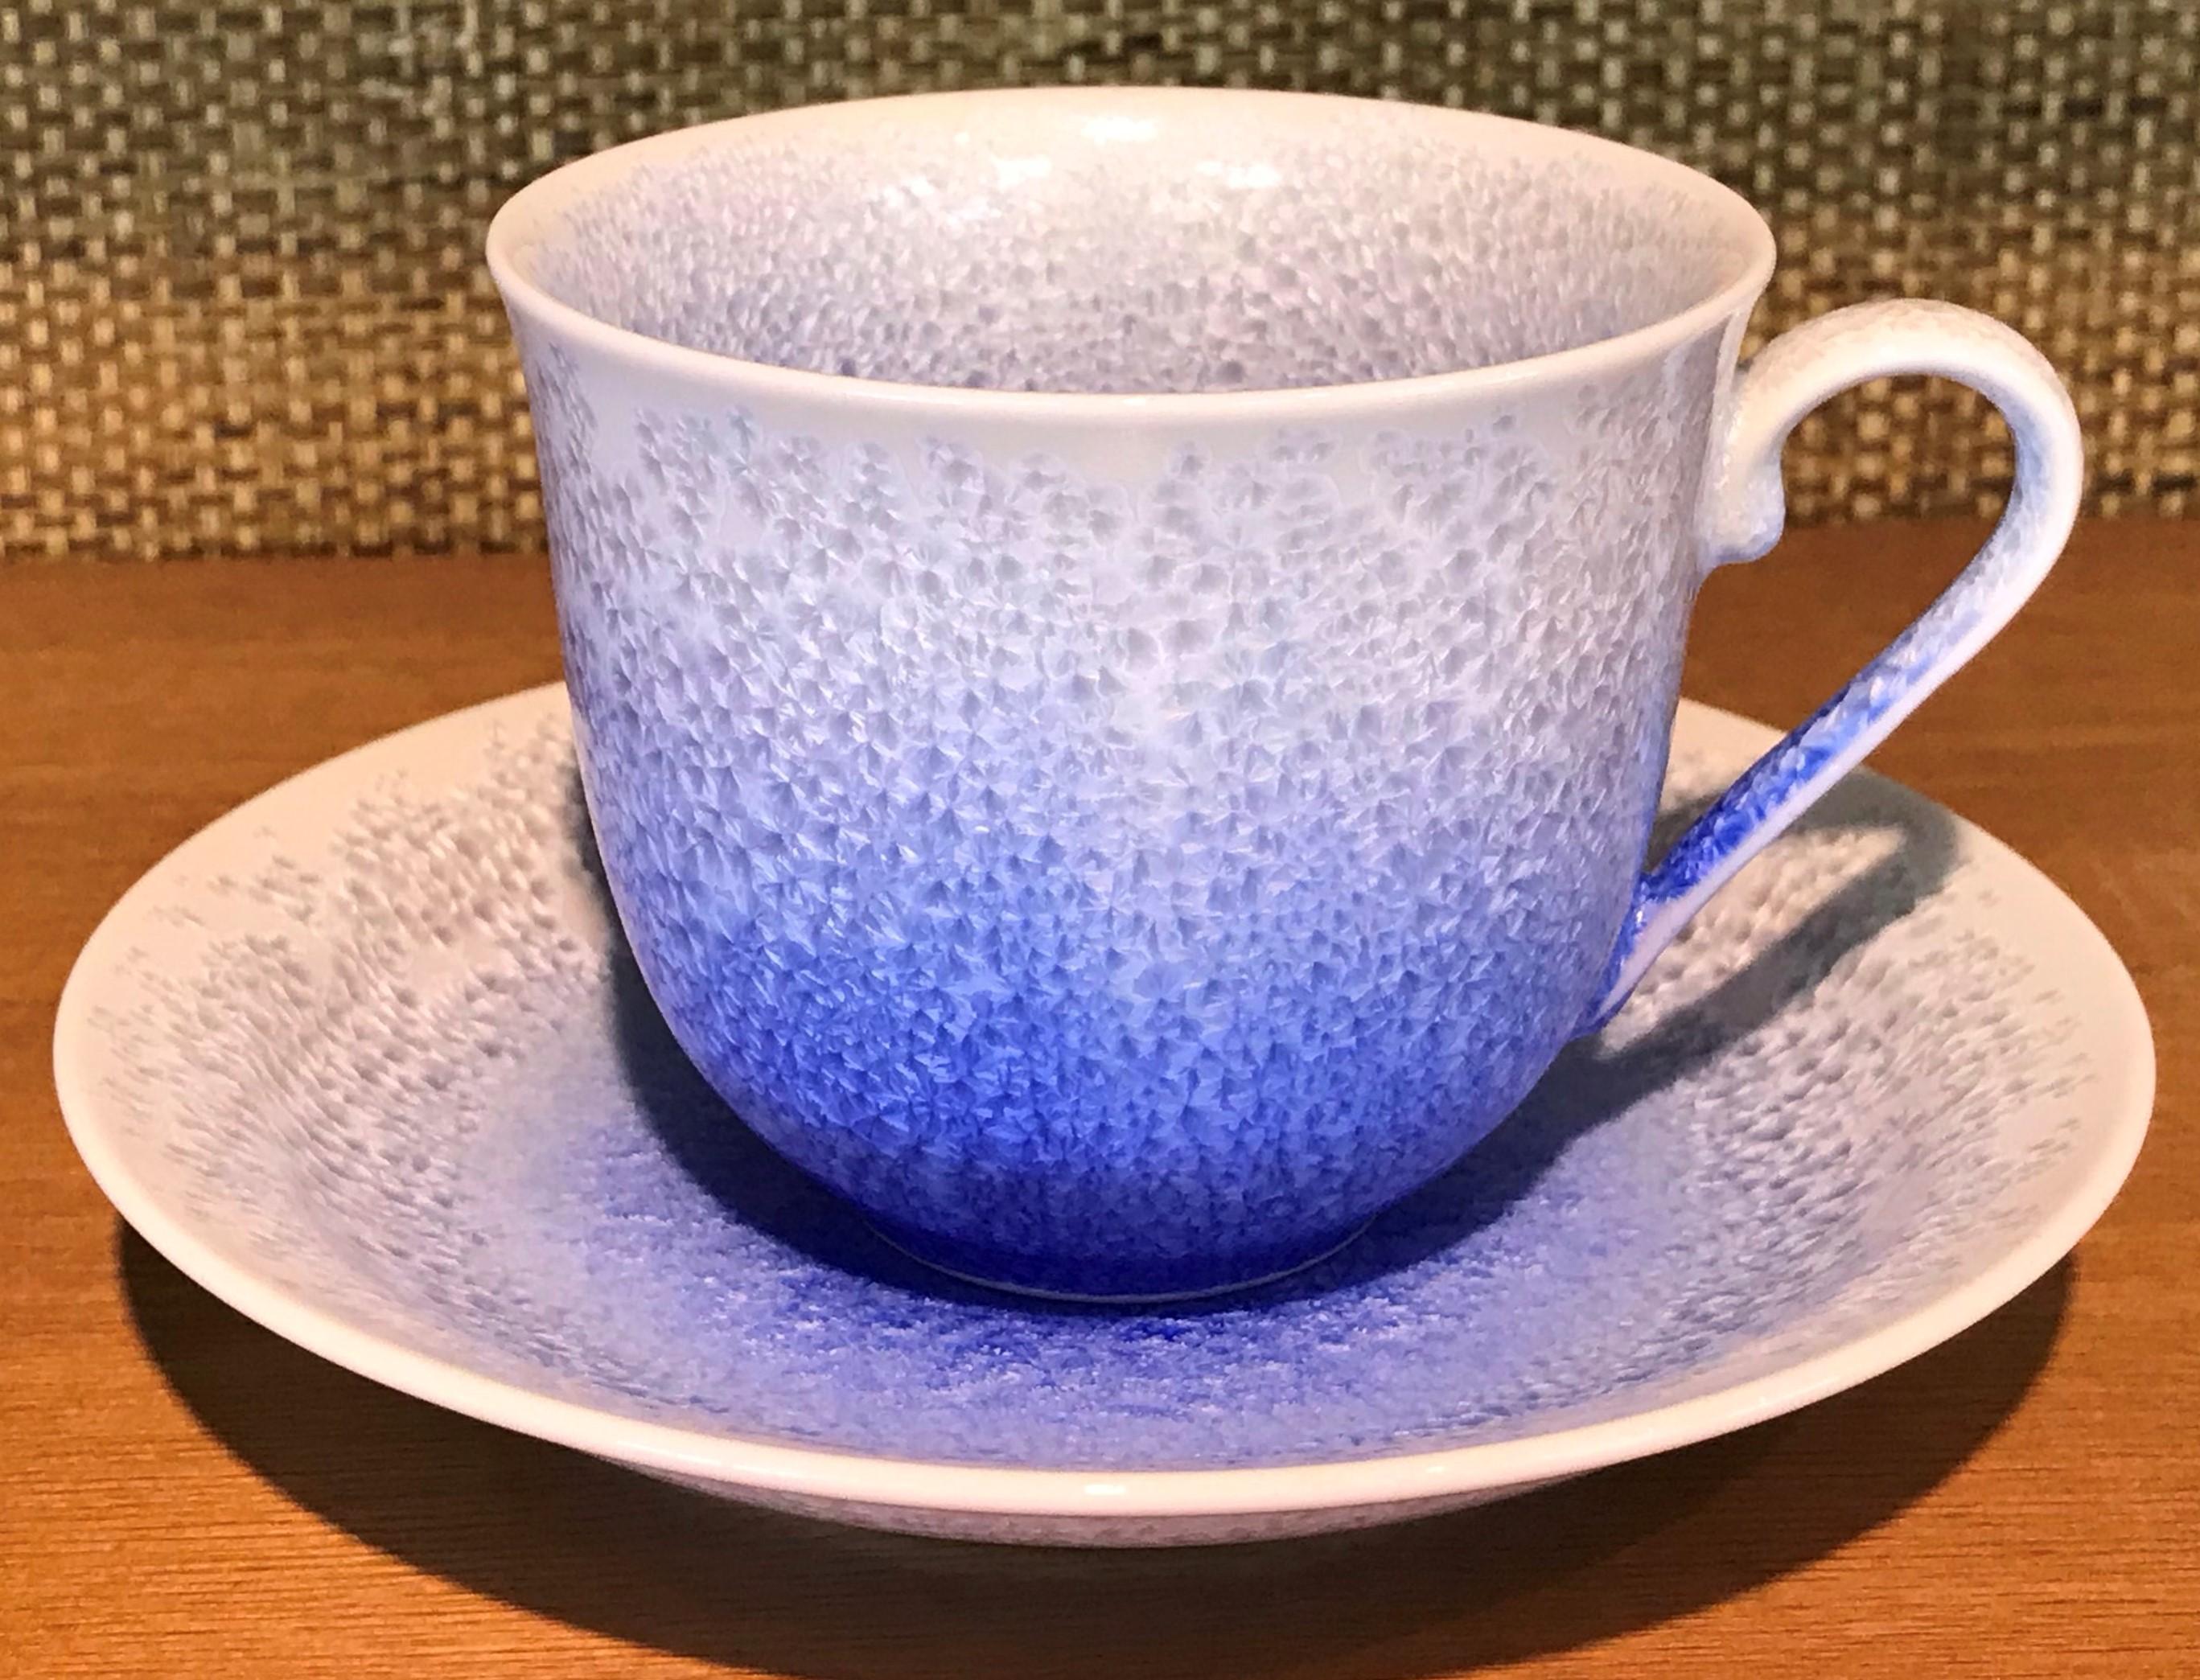 Japanese Black Blue Hand-Glazed Porcelain Cup and Saucer, Master Artist 2018 1